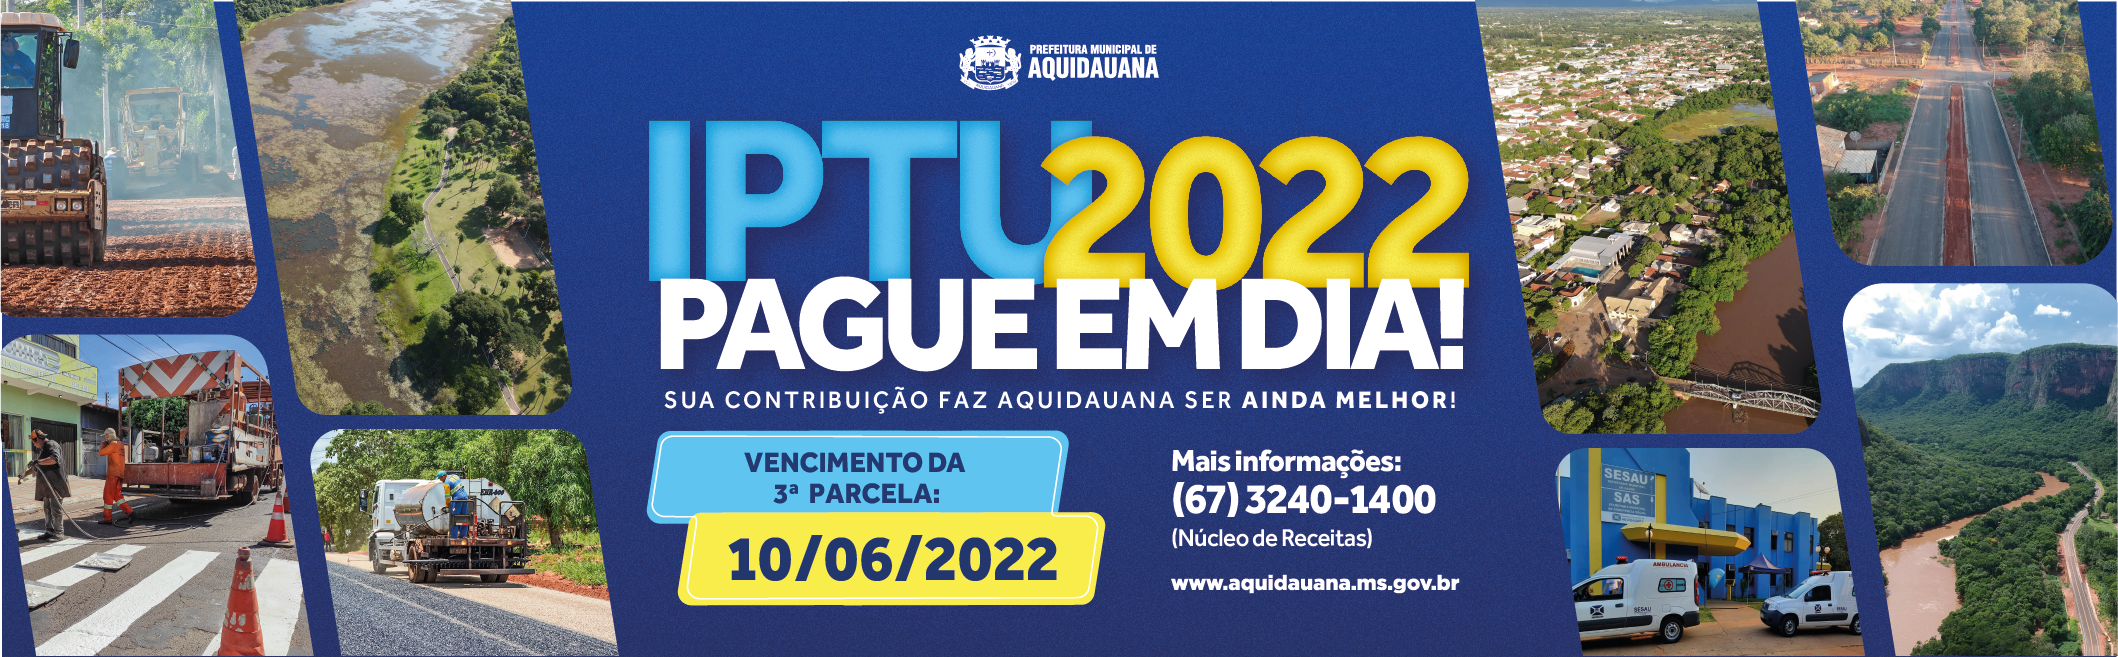 IPTU 2022 - Aquidauana - Cota Unica até 11/04/2022